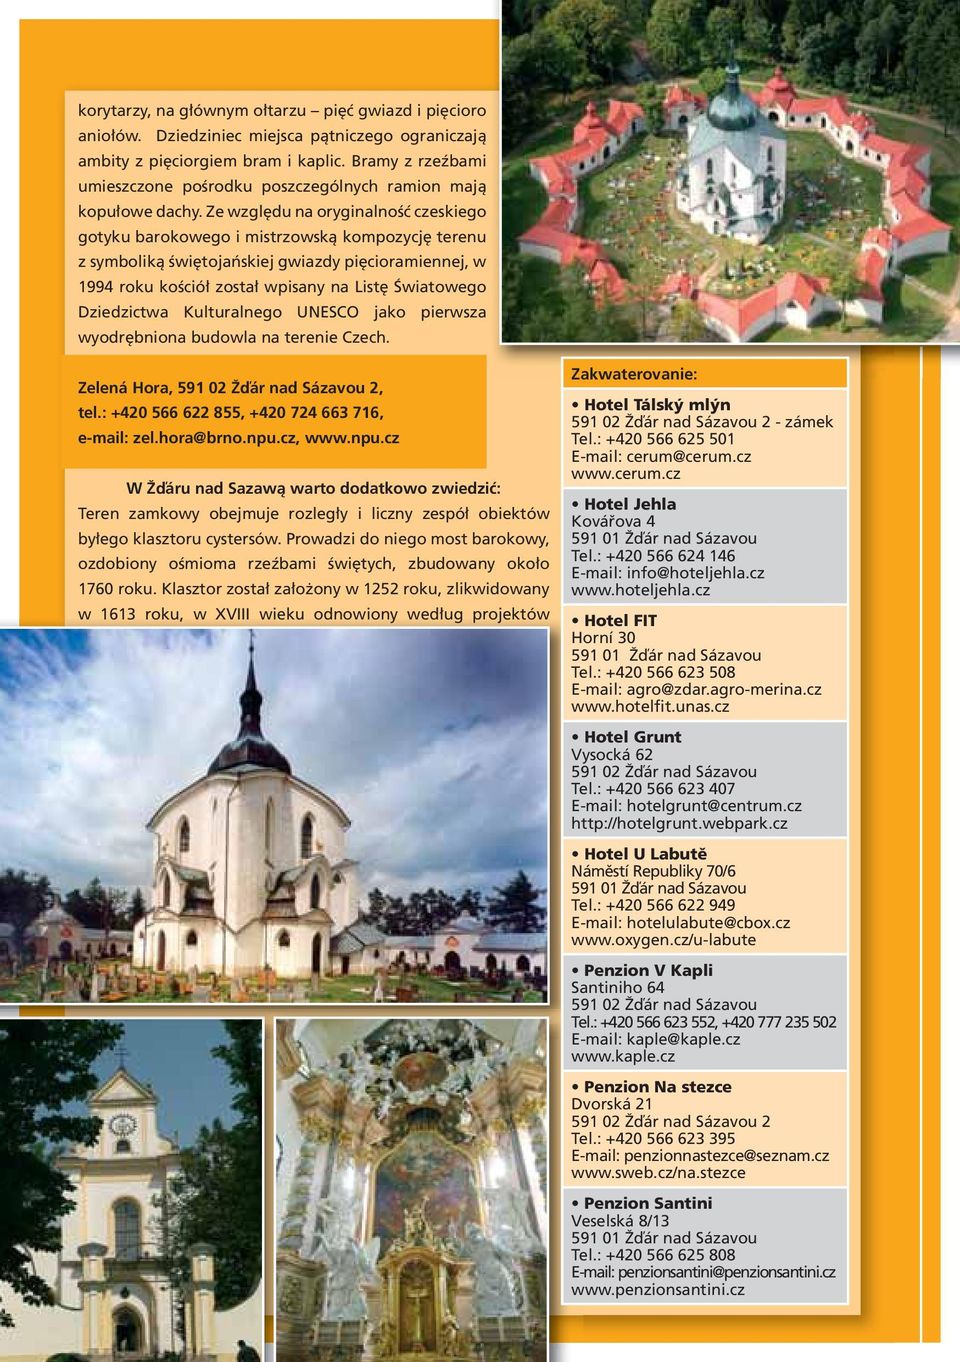 Ze względu na oryginalność czeskiego gotyku barokowego i mistrzowską kompozycję terenu z symboliką świętojańskiej gwiazdy pięcioramiennej, w 1994 roku kościół został wpisany na Listę Światowego